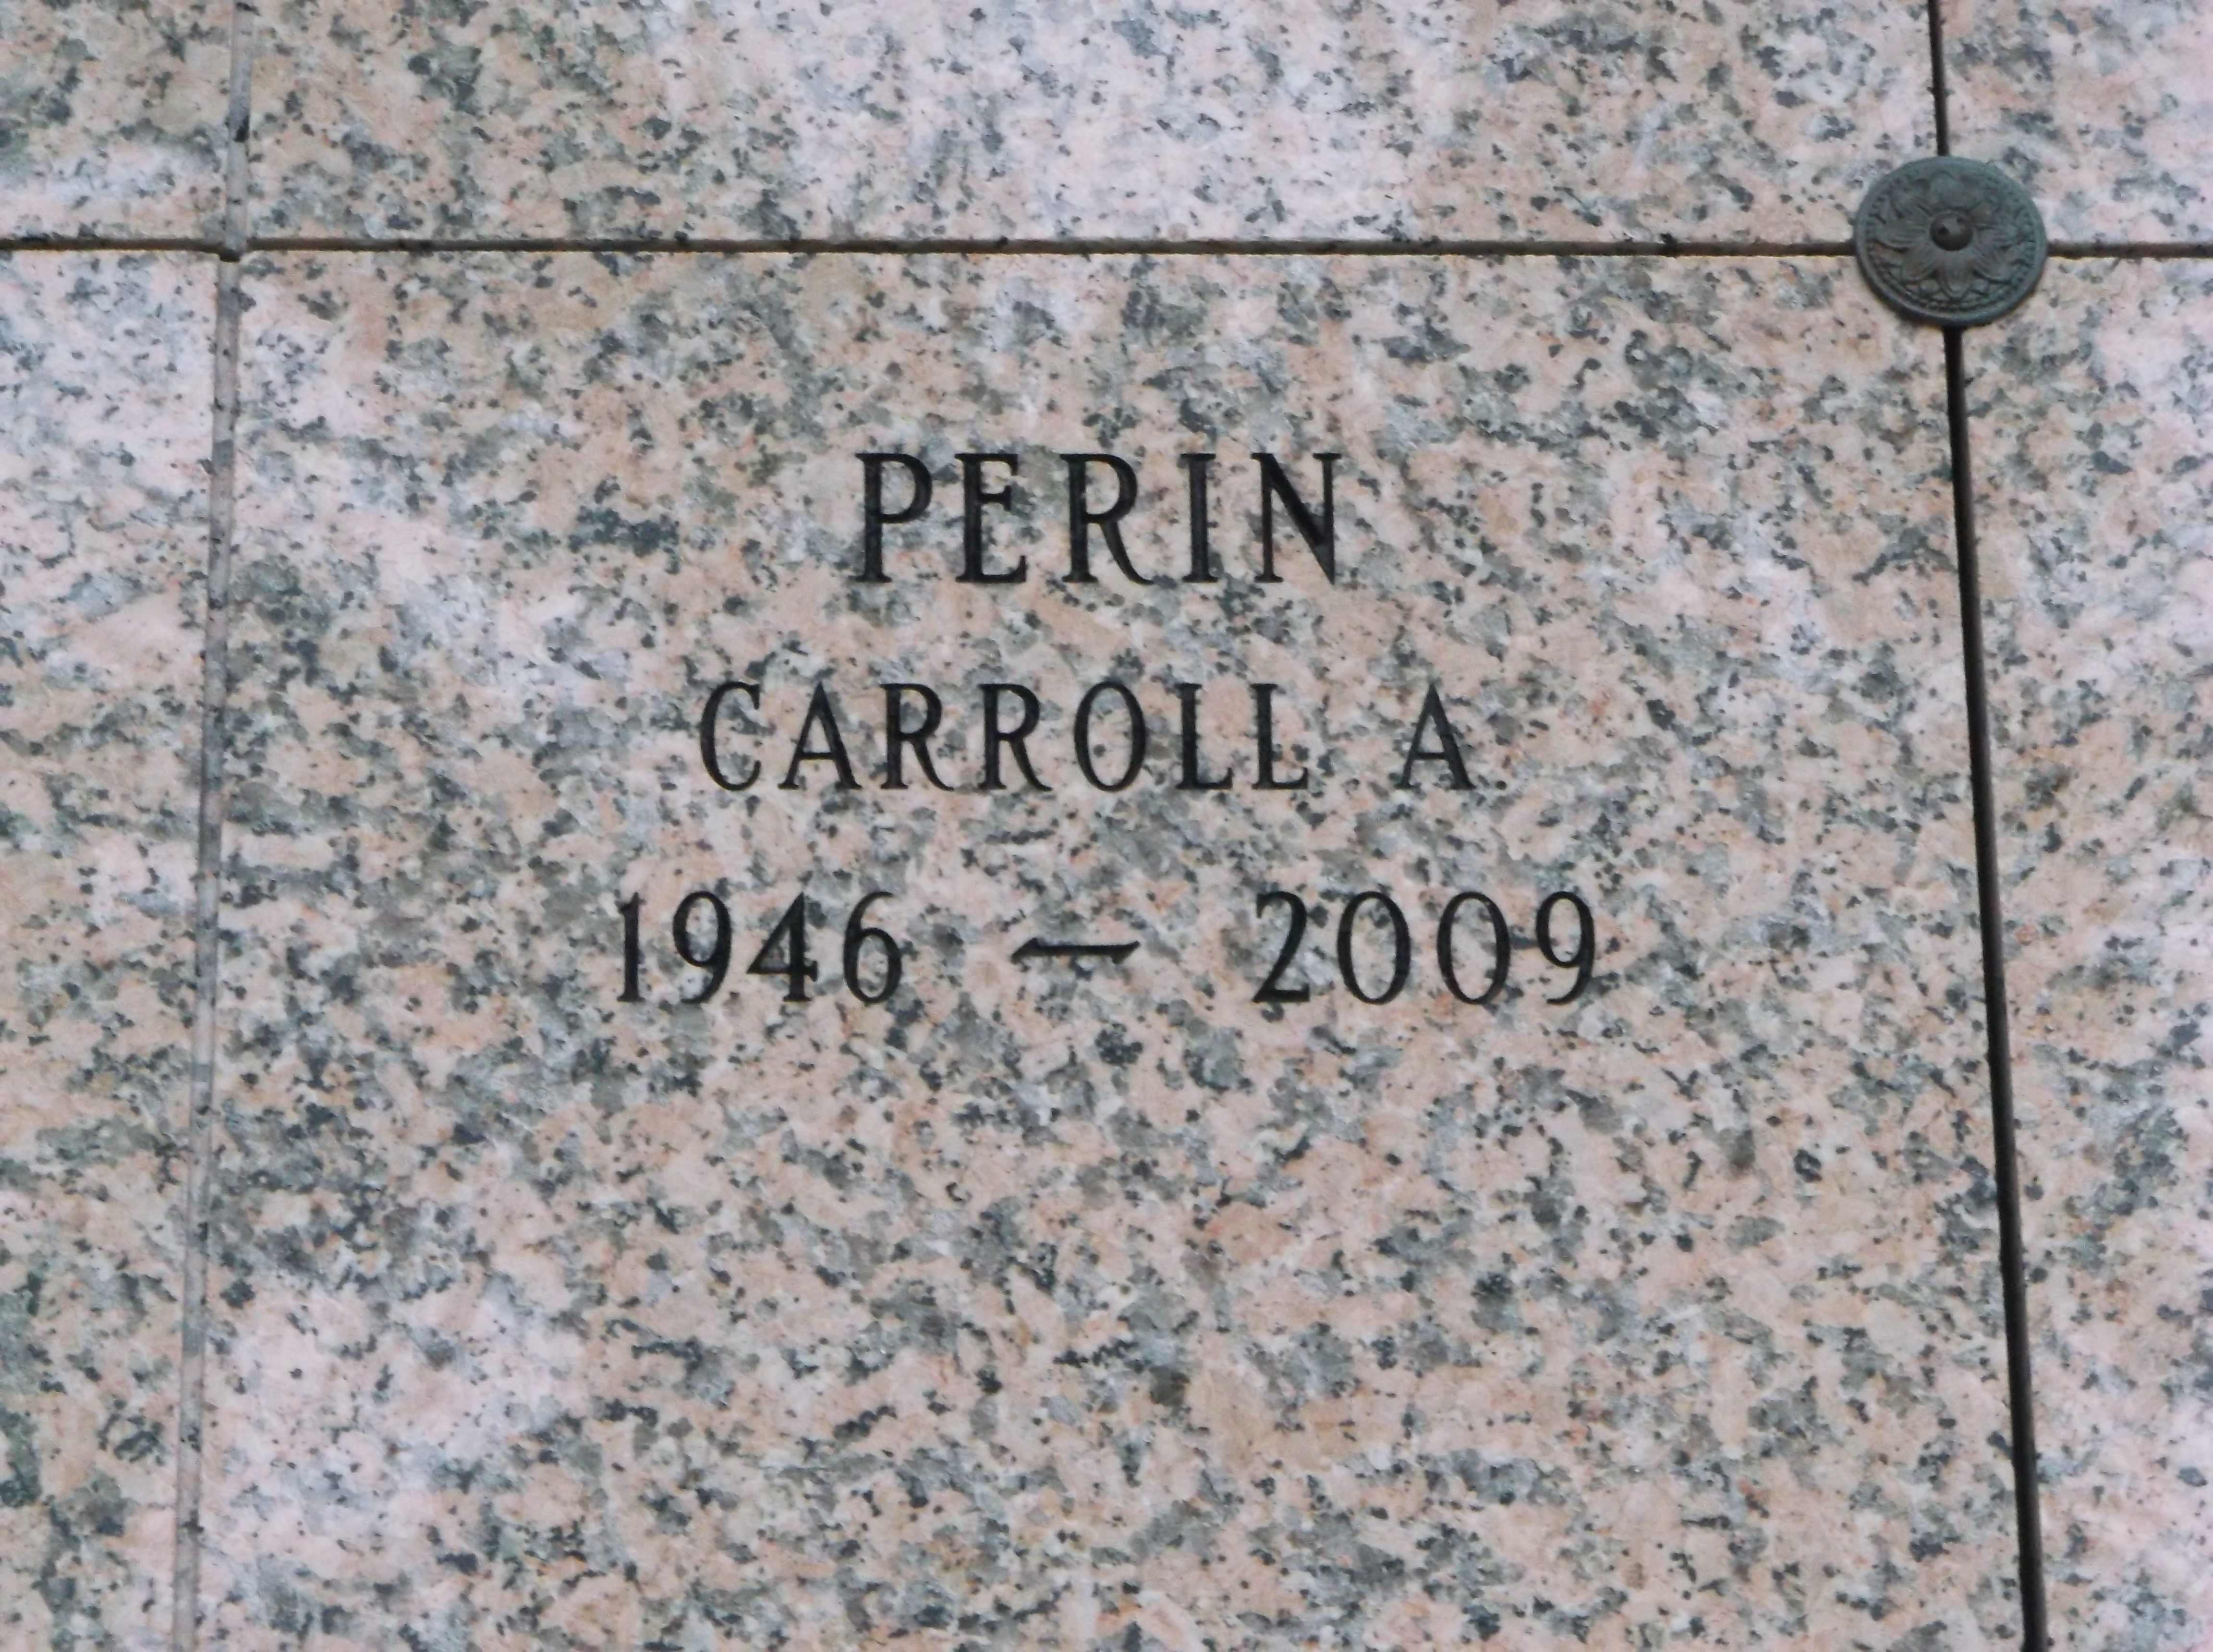 Carroll A Perin